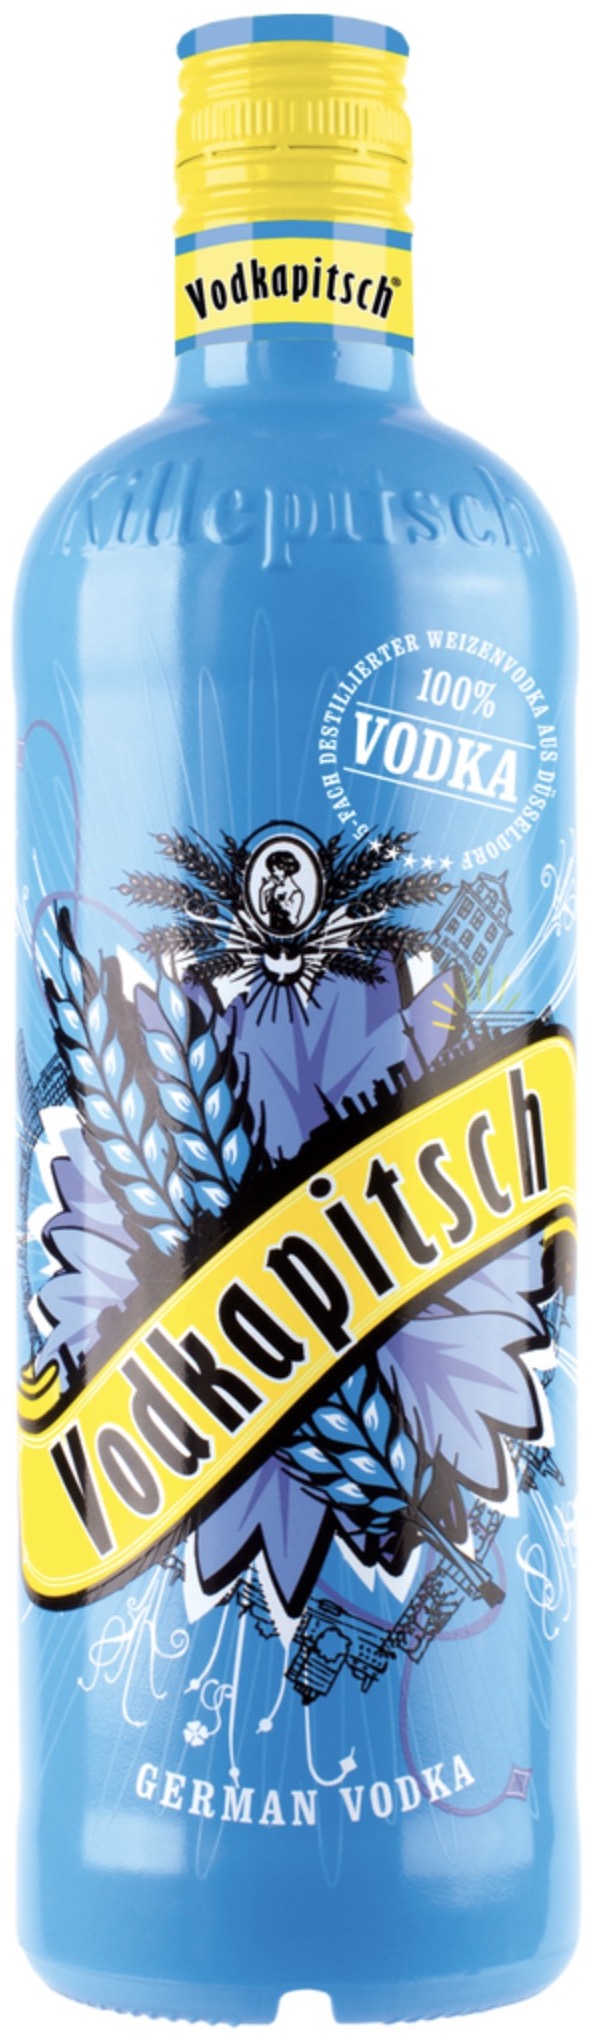 Vodkapitsch 40% vol. 0,7L